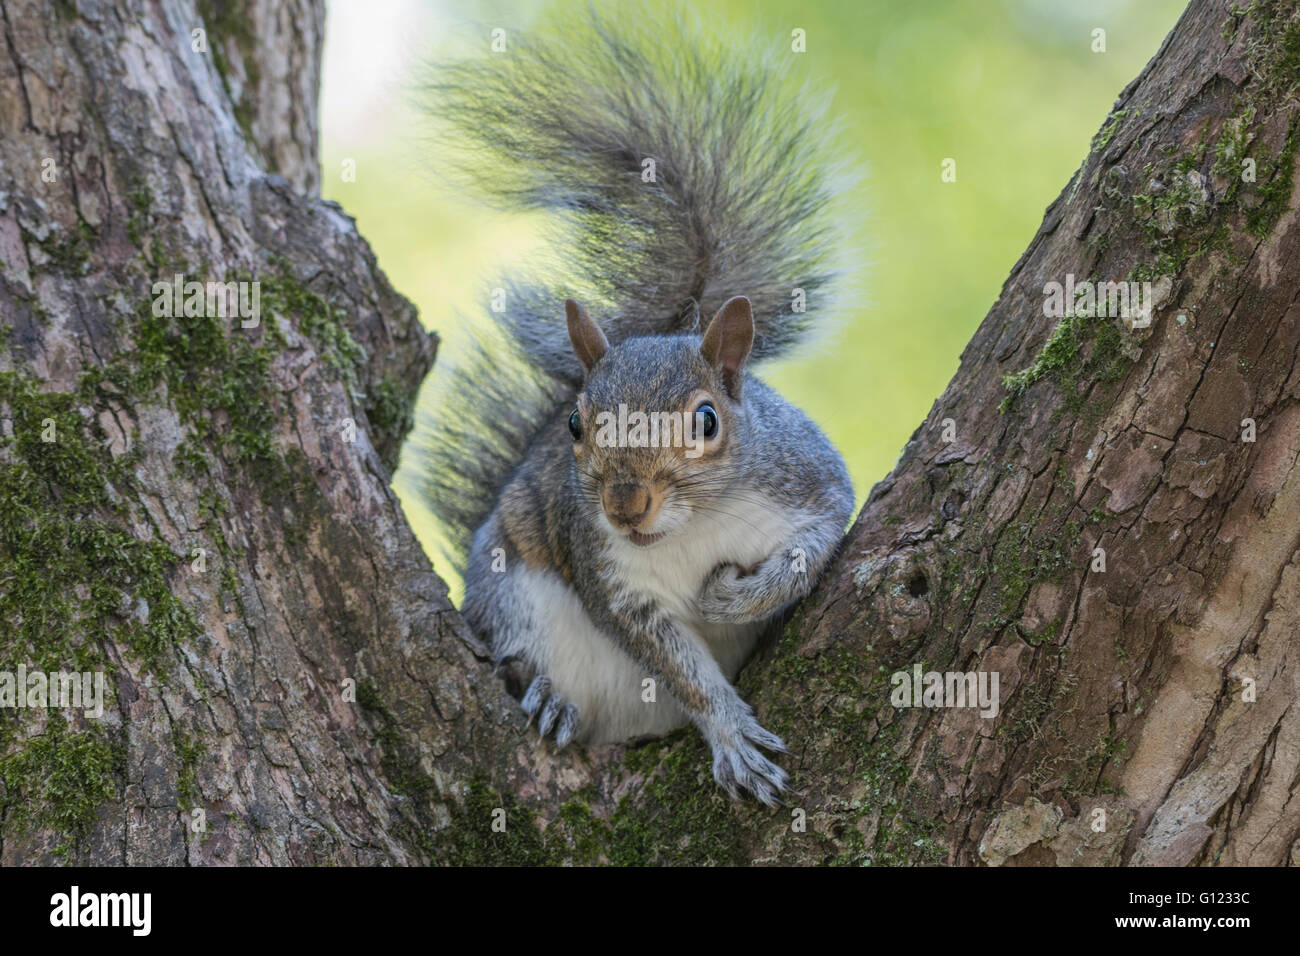 Ardilla gris sentado entre las ramas de un árbol Foto de stock